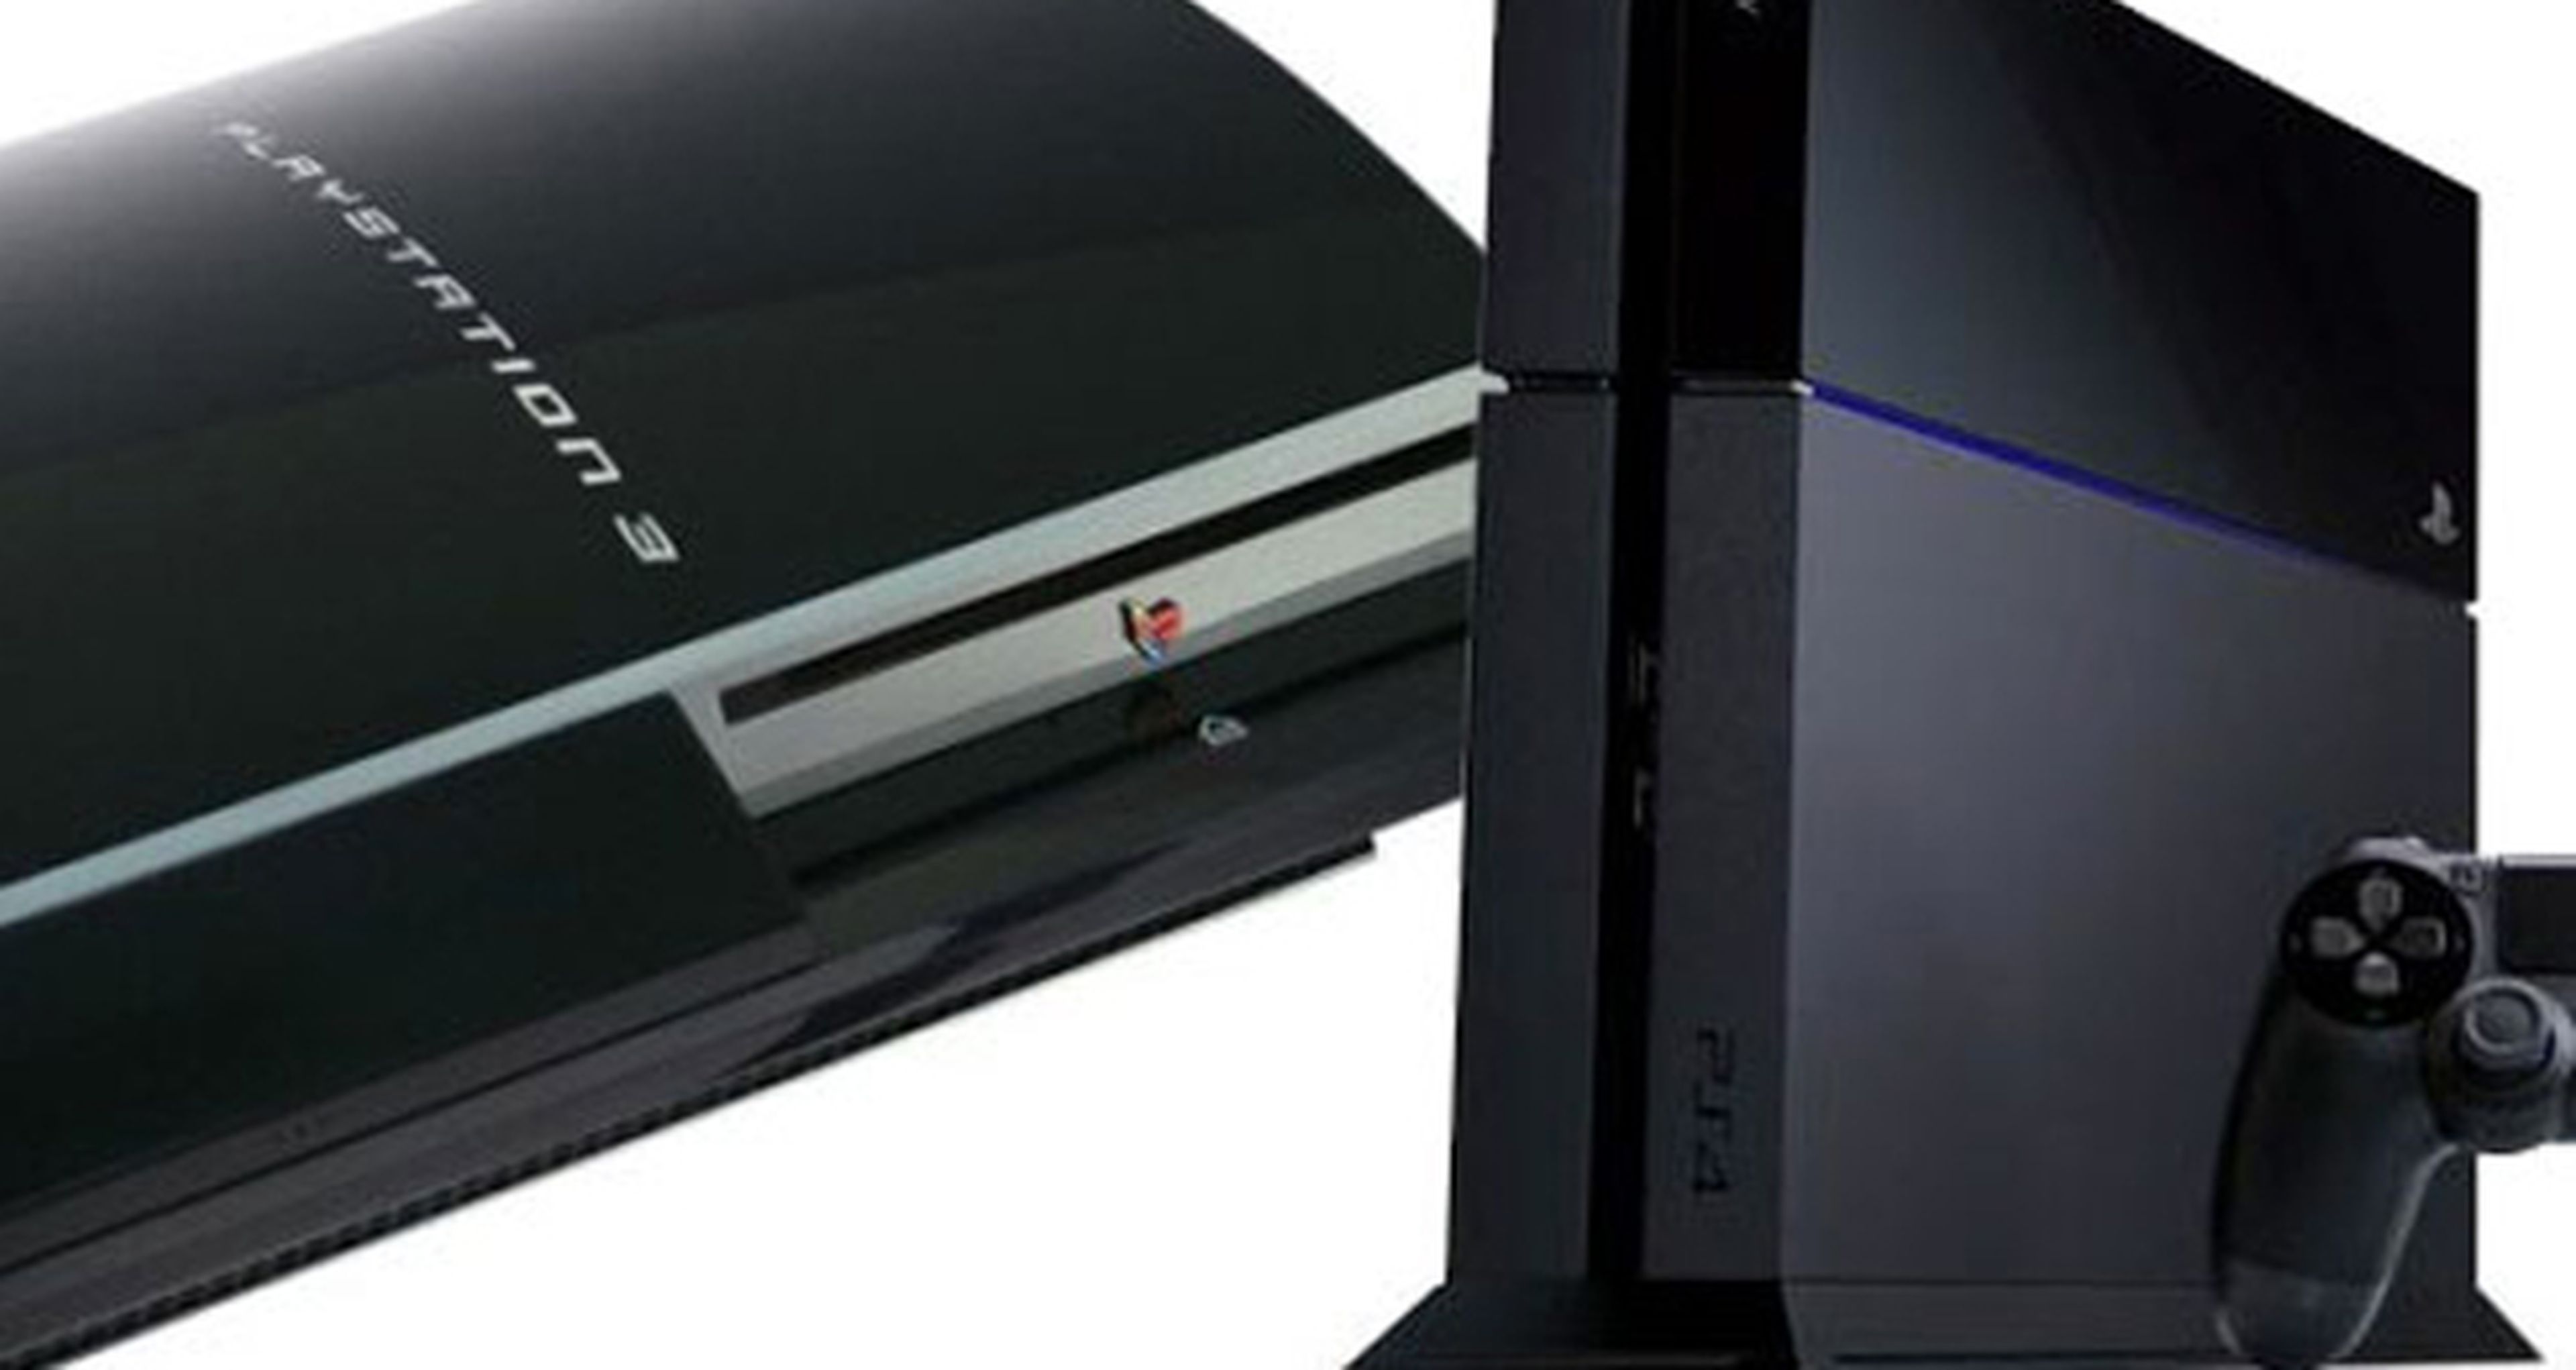 Sony espera que PS4 tenga un mayor ciclo de vida que PS3